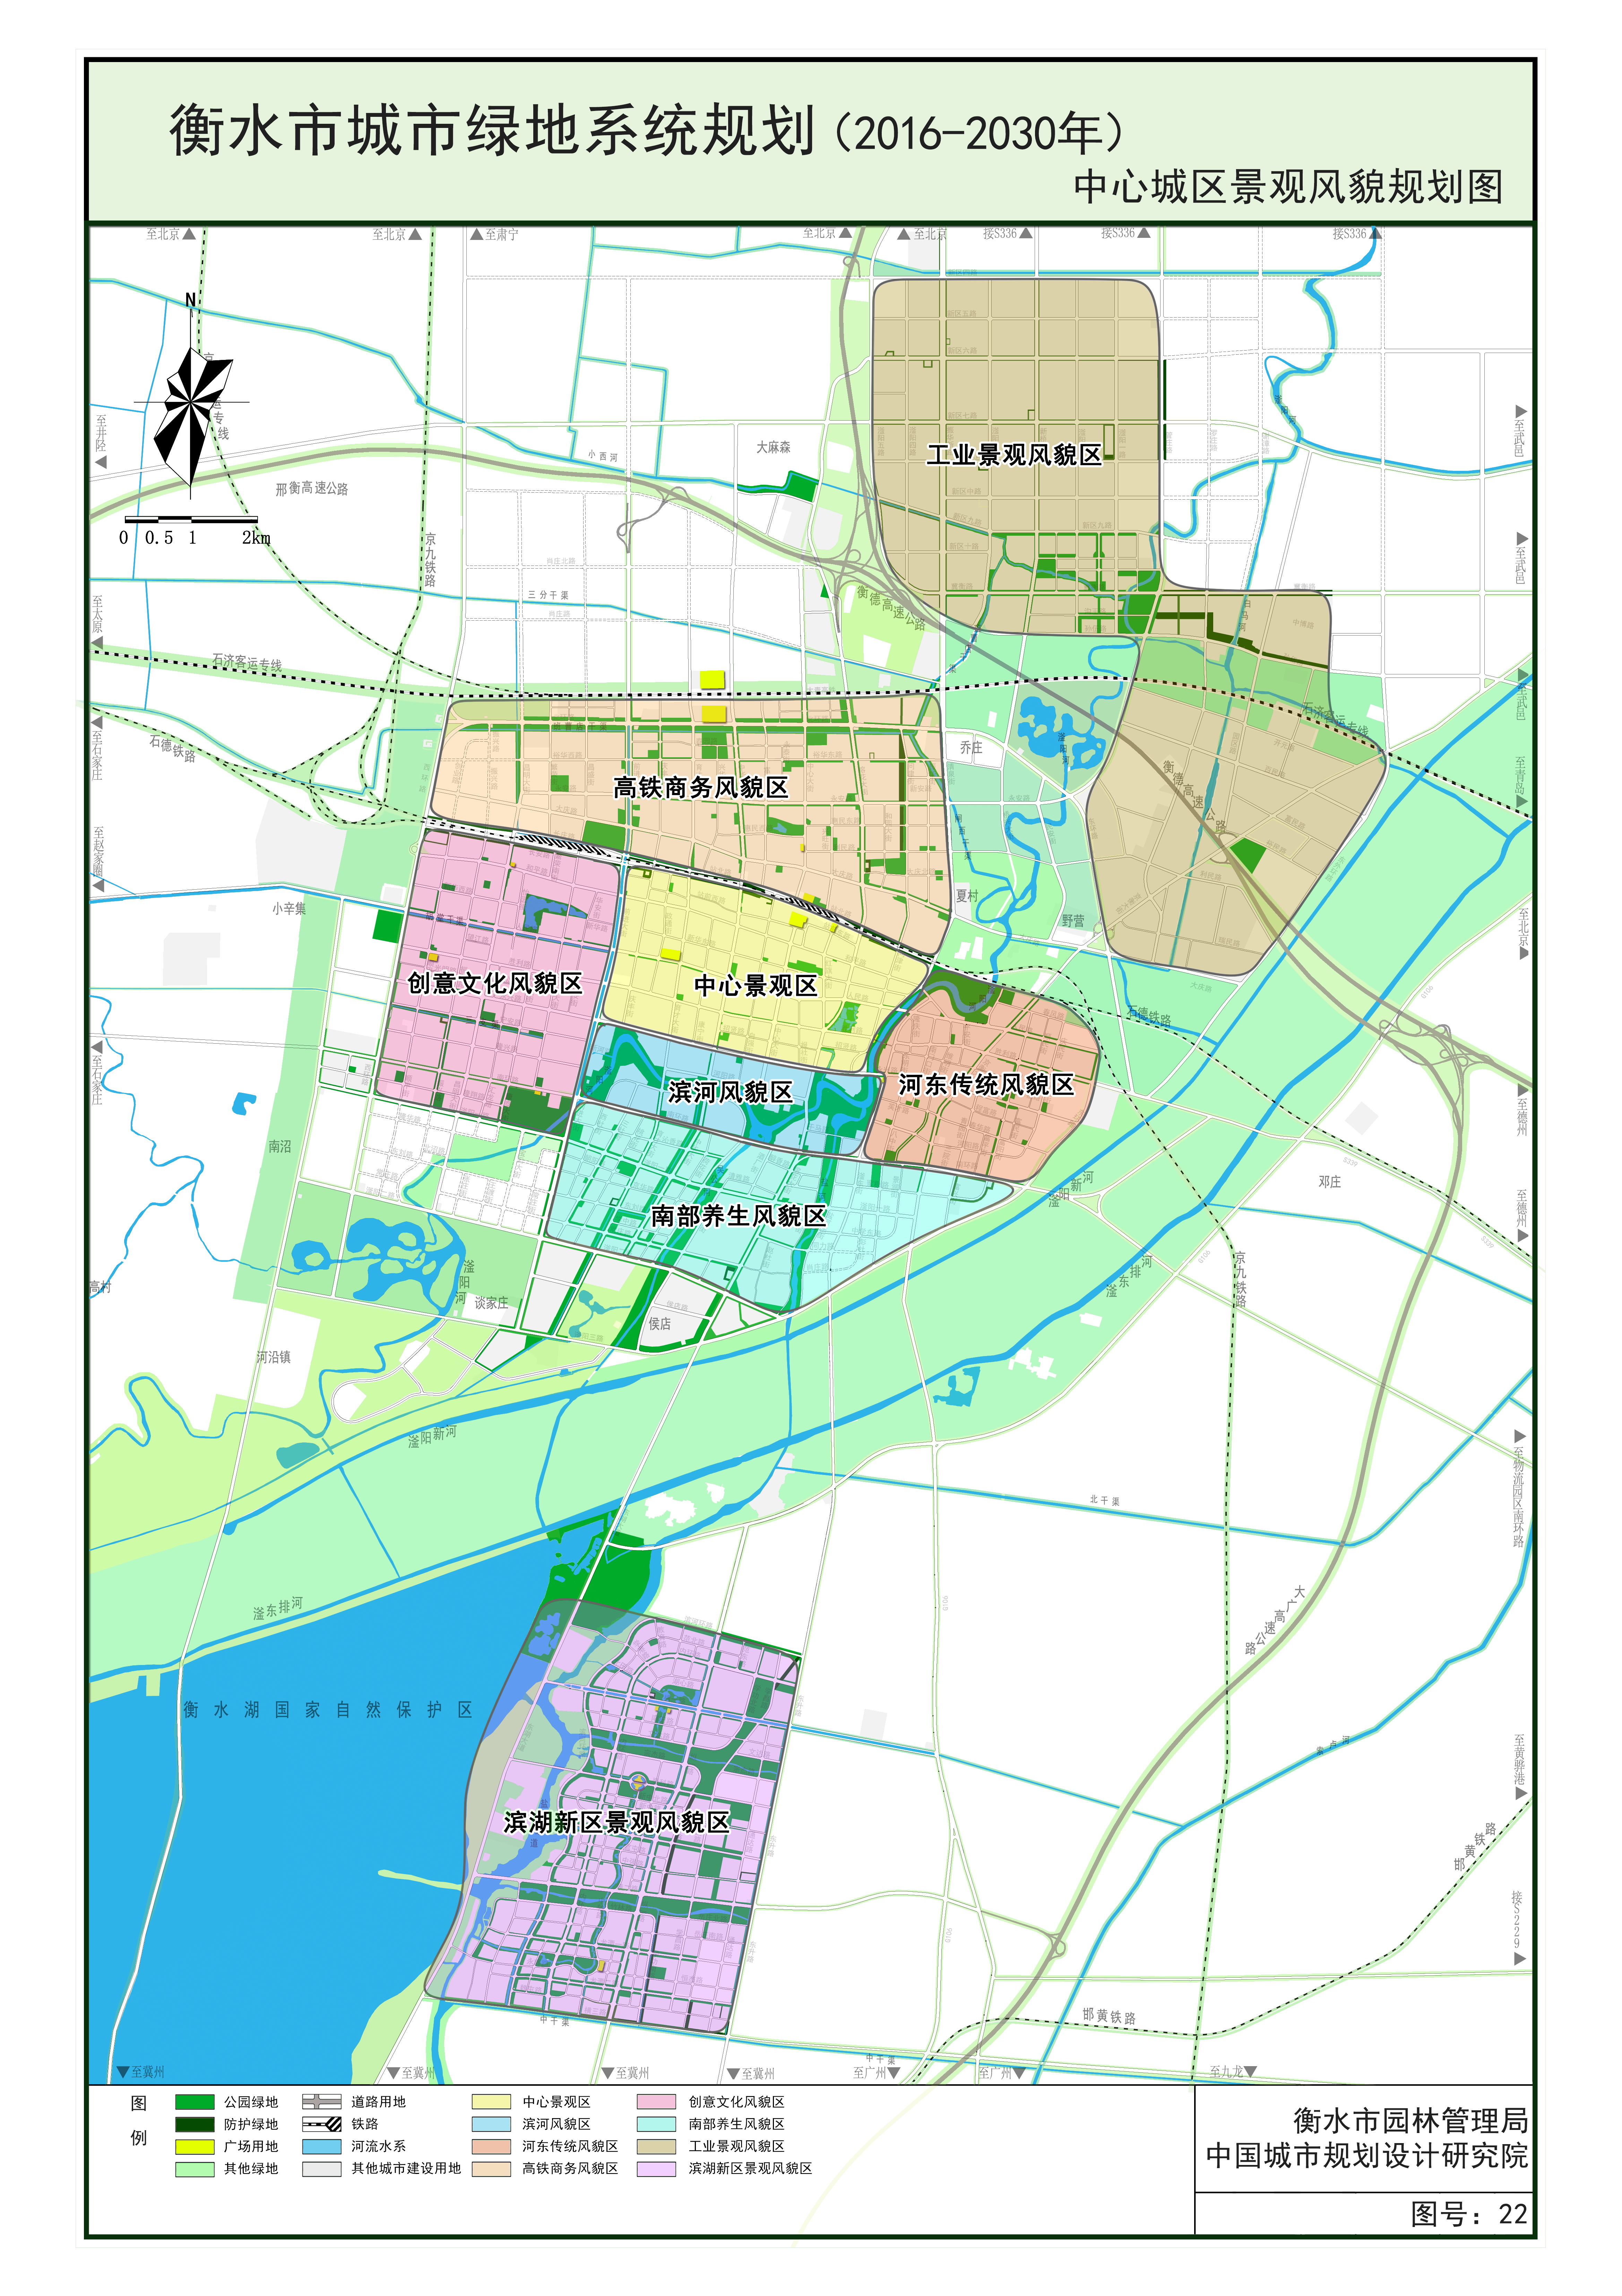 关于对《衡水市城市绿地系统规划(2016-2030)》进行公示的说明